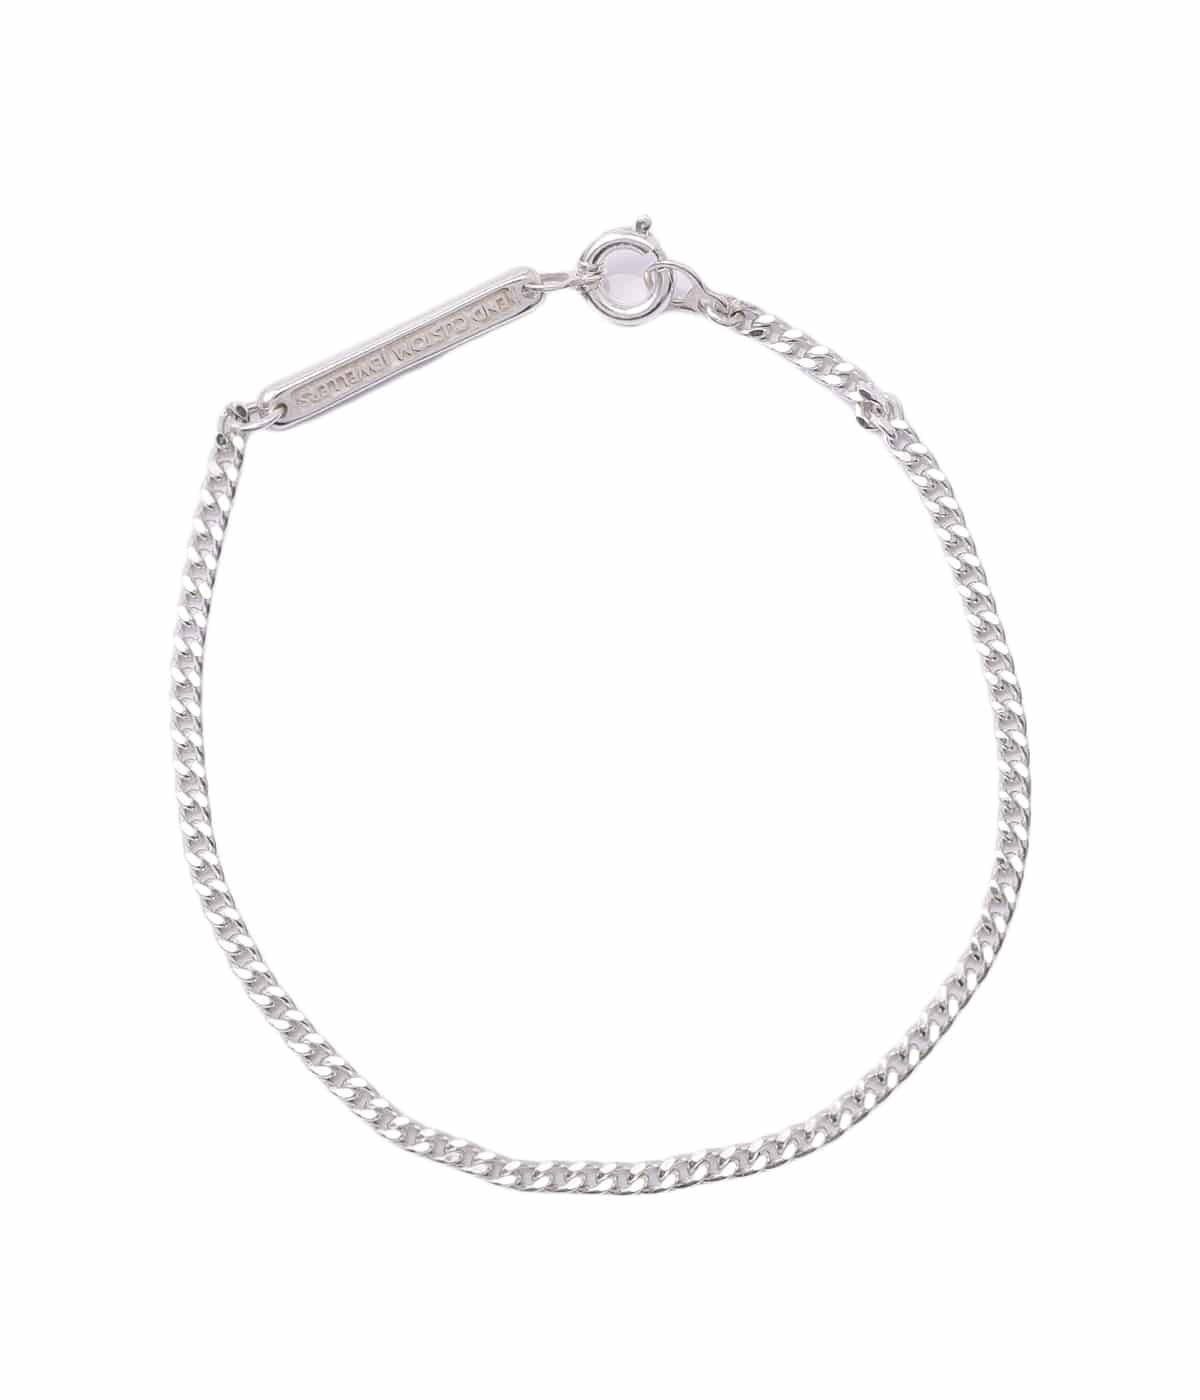 Curve cut chain bracelet